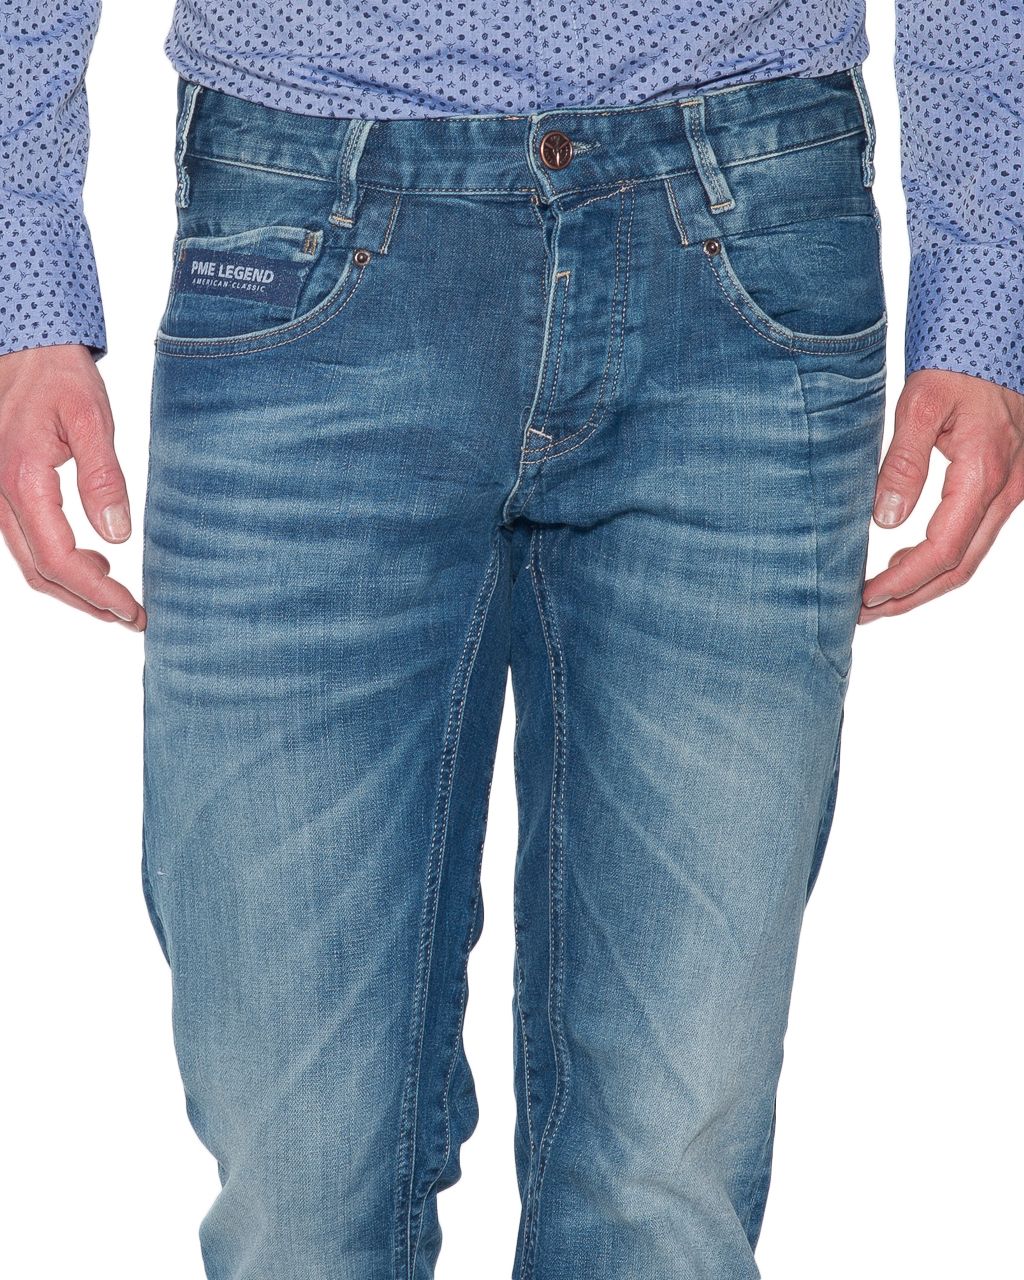 ga sightseeing Beginner kousen PME Legend Commander 2 Jeans | Shop nu - OFM.